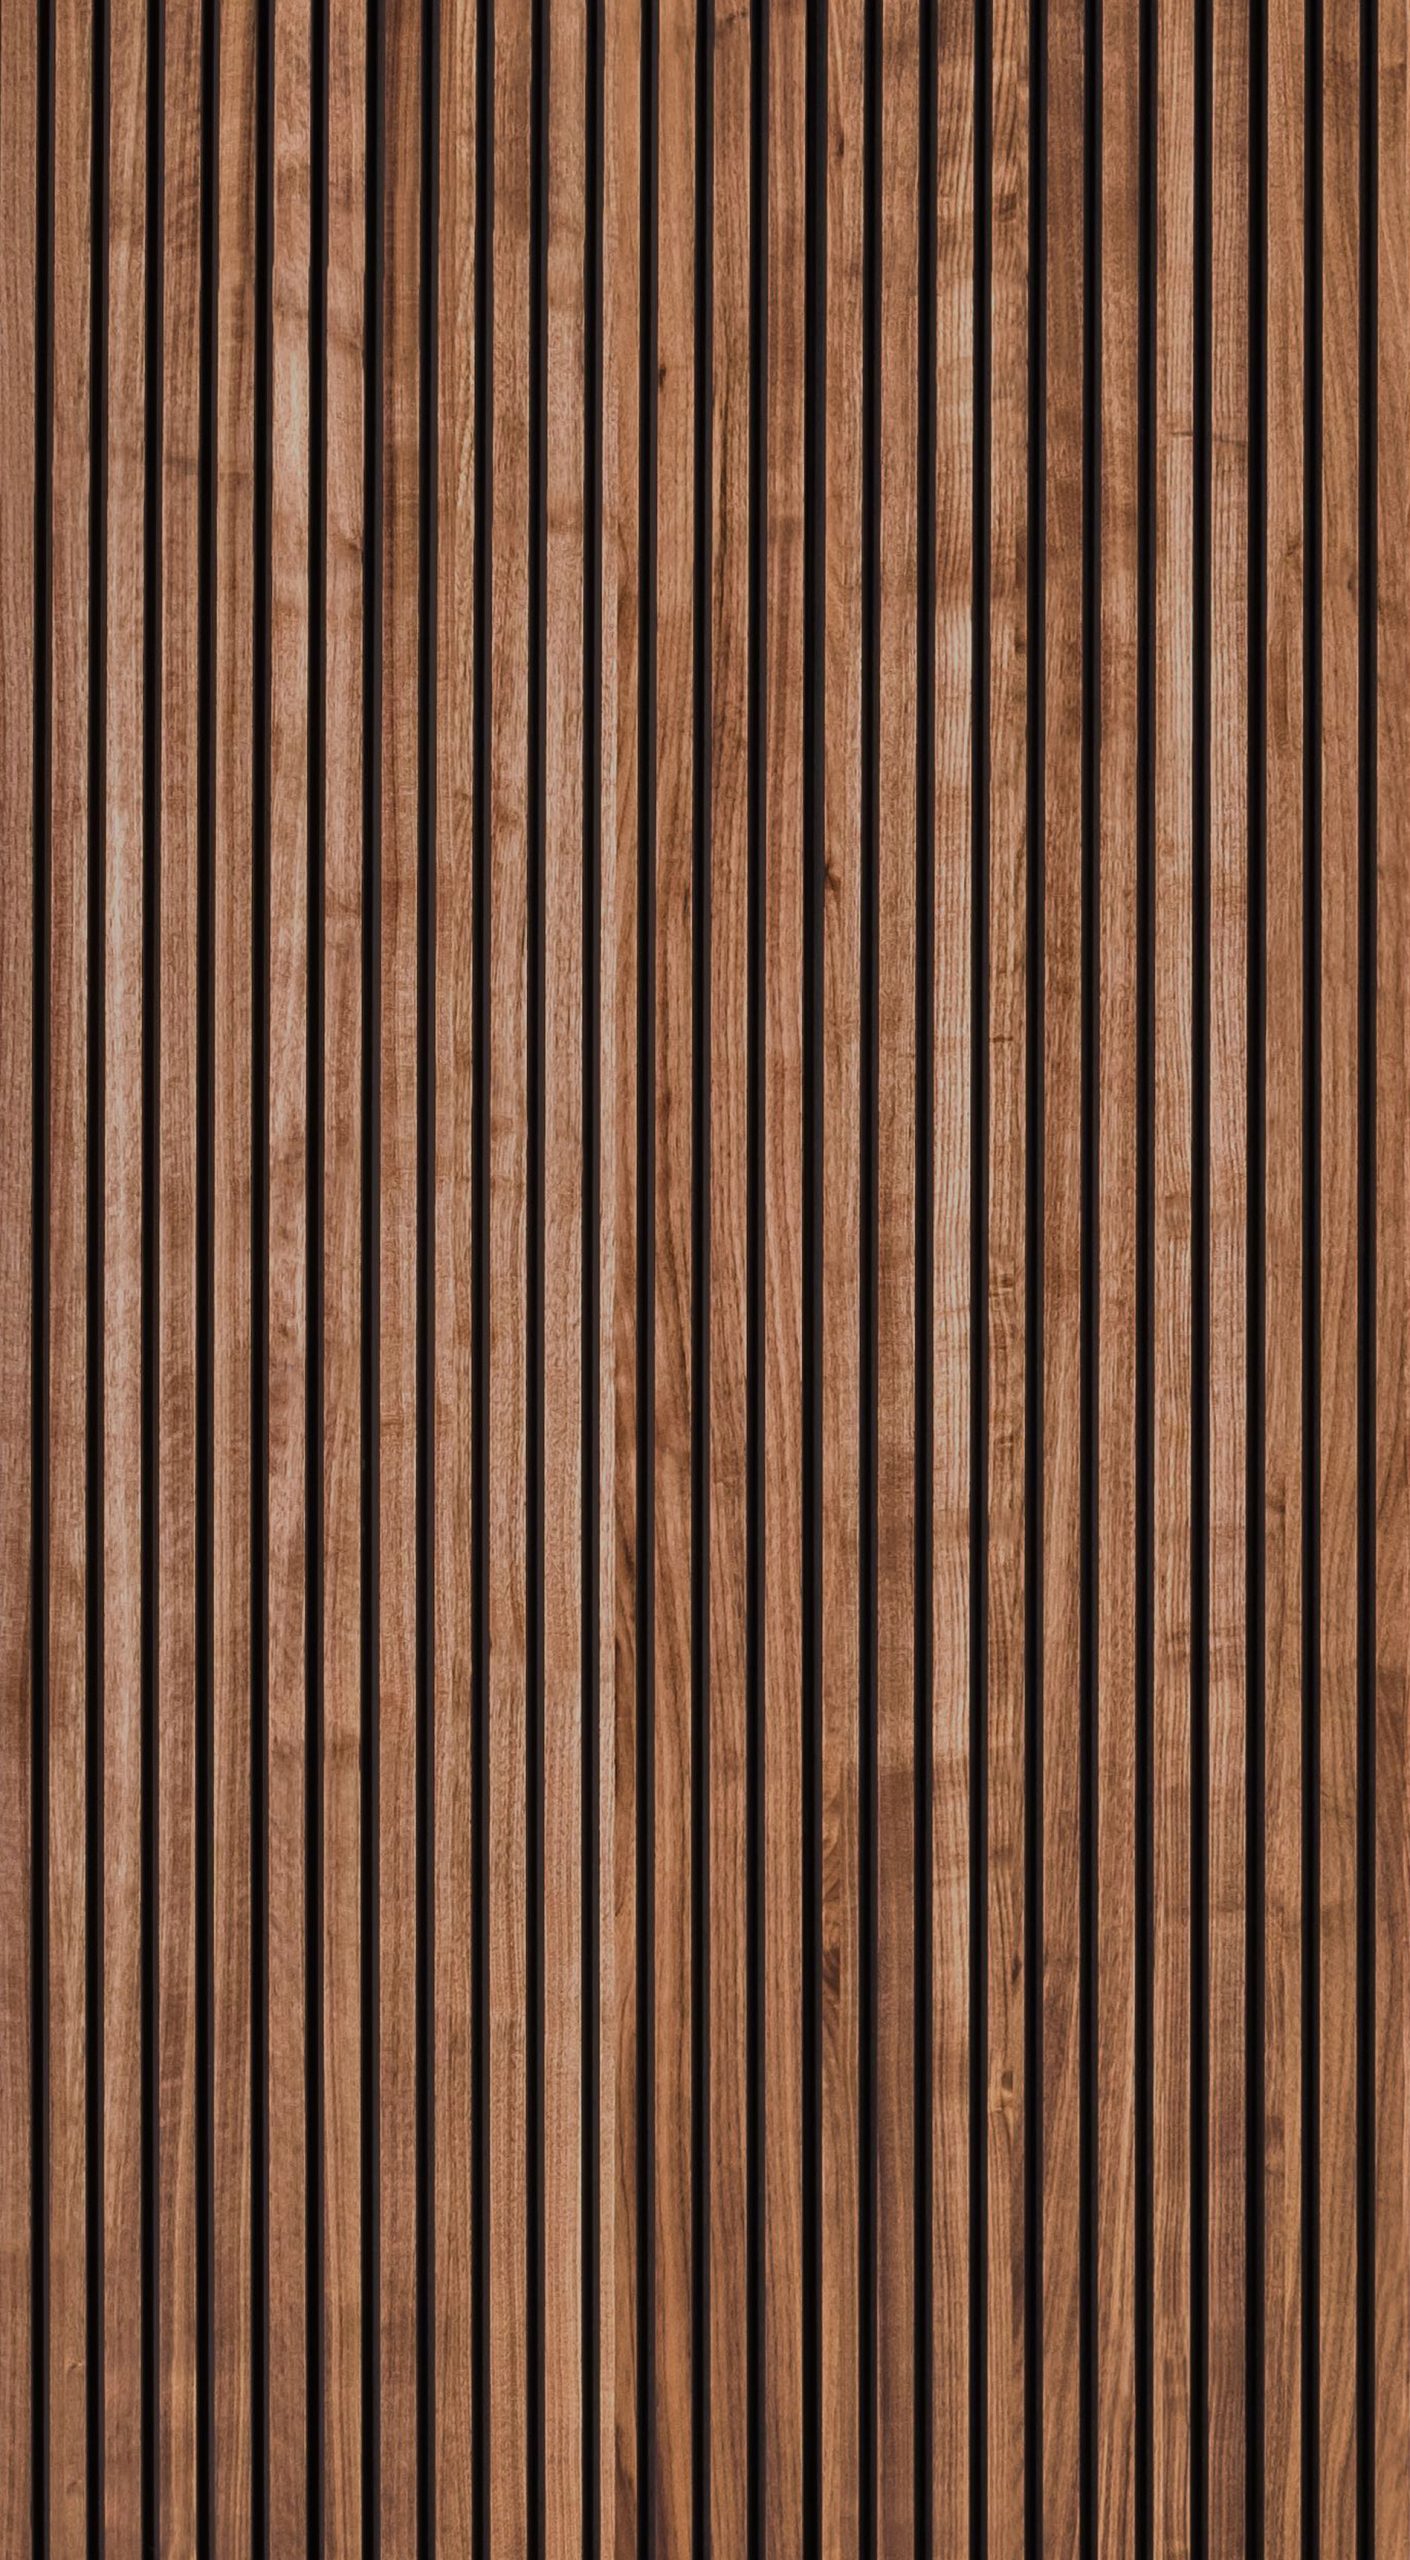 ASI - Wood Slat Wall - Linear - #Wood Slat Wall - Linear - Walnut ...